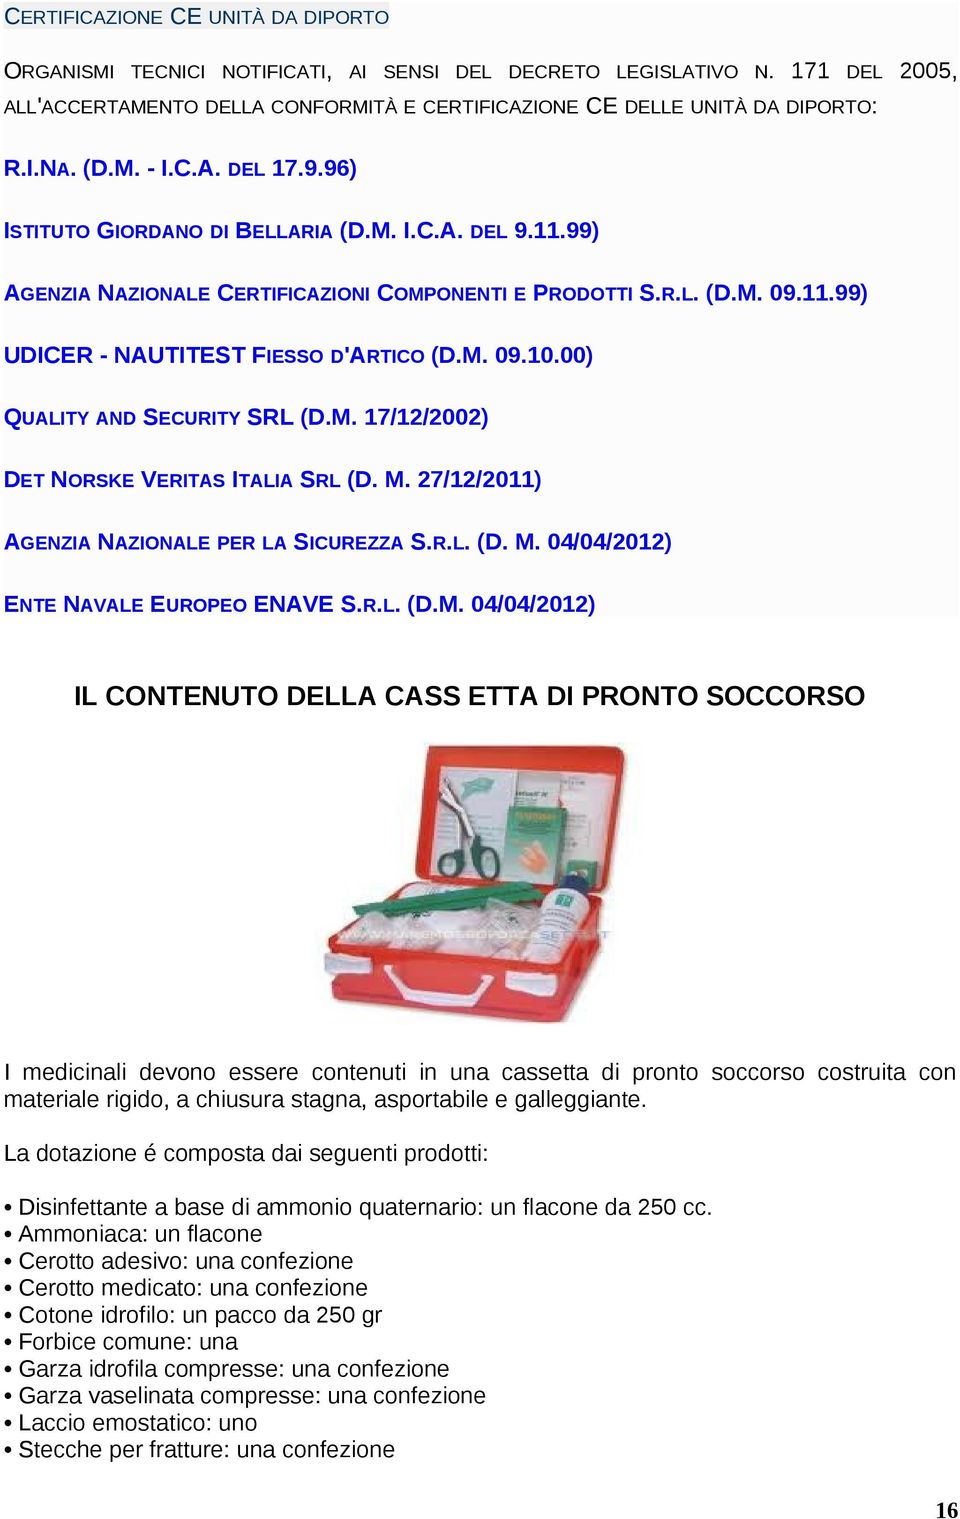 M. 09.10.00) QUALITY AND SECURITY SRL (D.M. 17/12/2002) DET NORSKE VERITAS ITALIA SRL (D. M. 27/12/2011) AGENZIA NAZIONALE PER LA SICUREZZA S.R.L. (D. M. 04/04/2012) ENTE NAVALE EUROPEO ENAVE S.R.L.